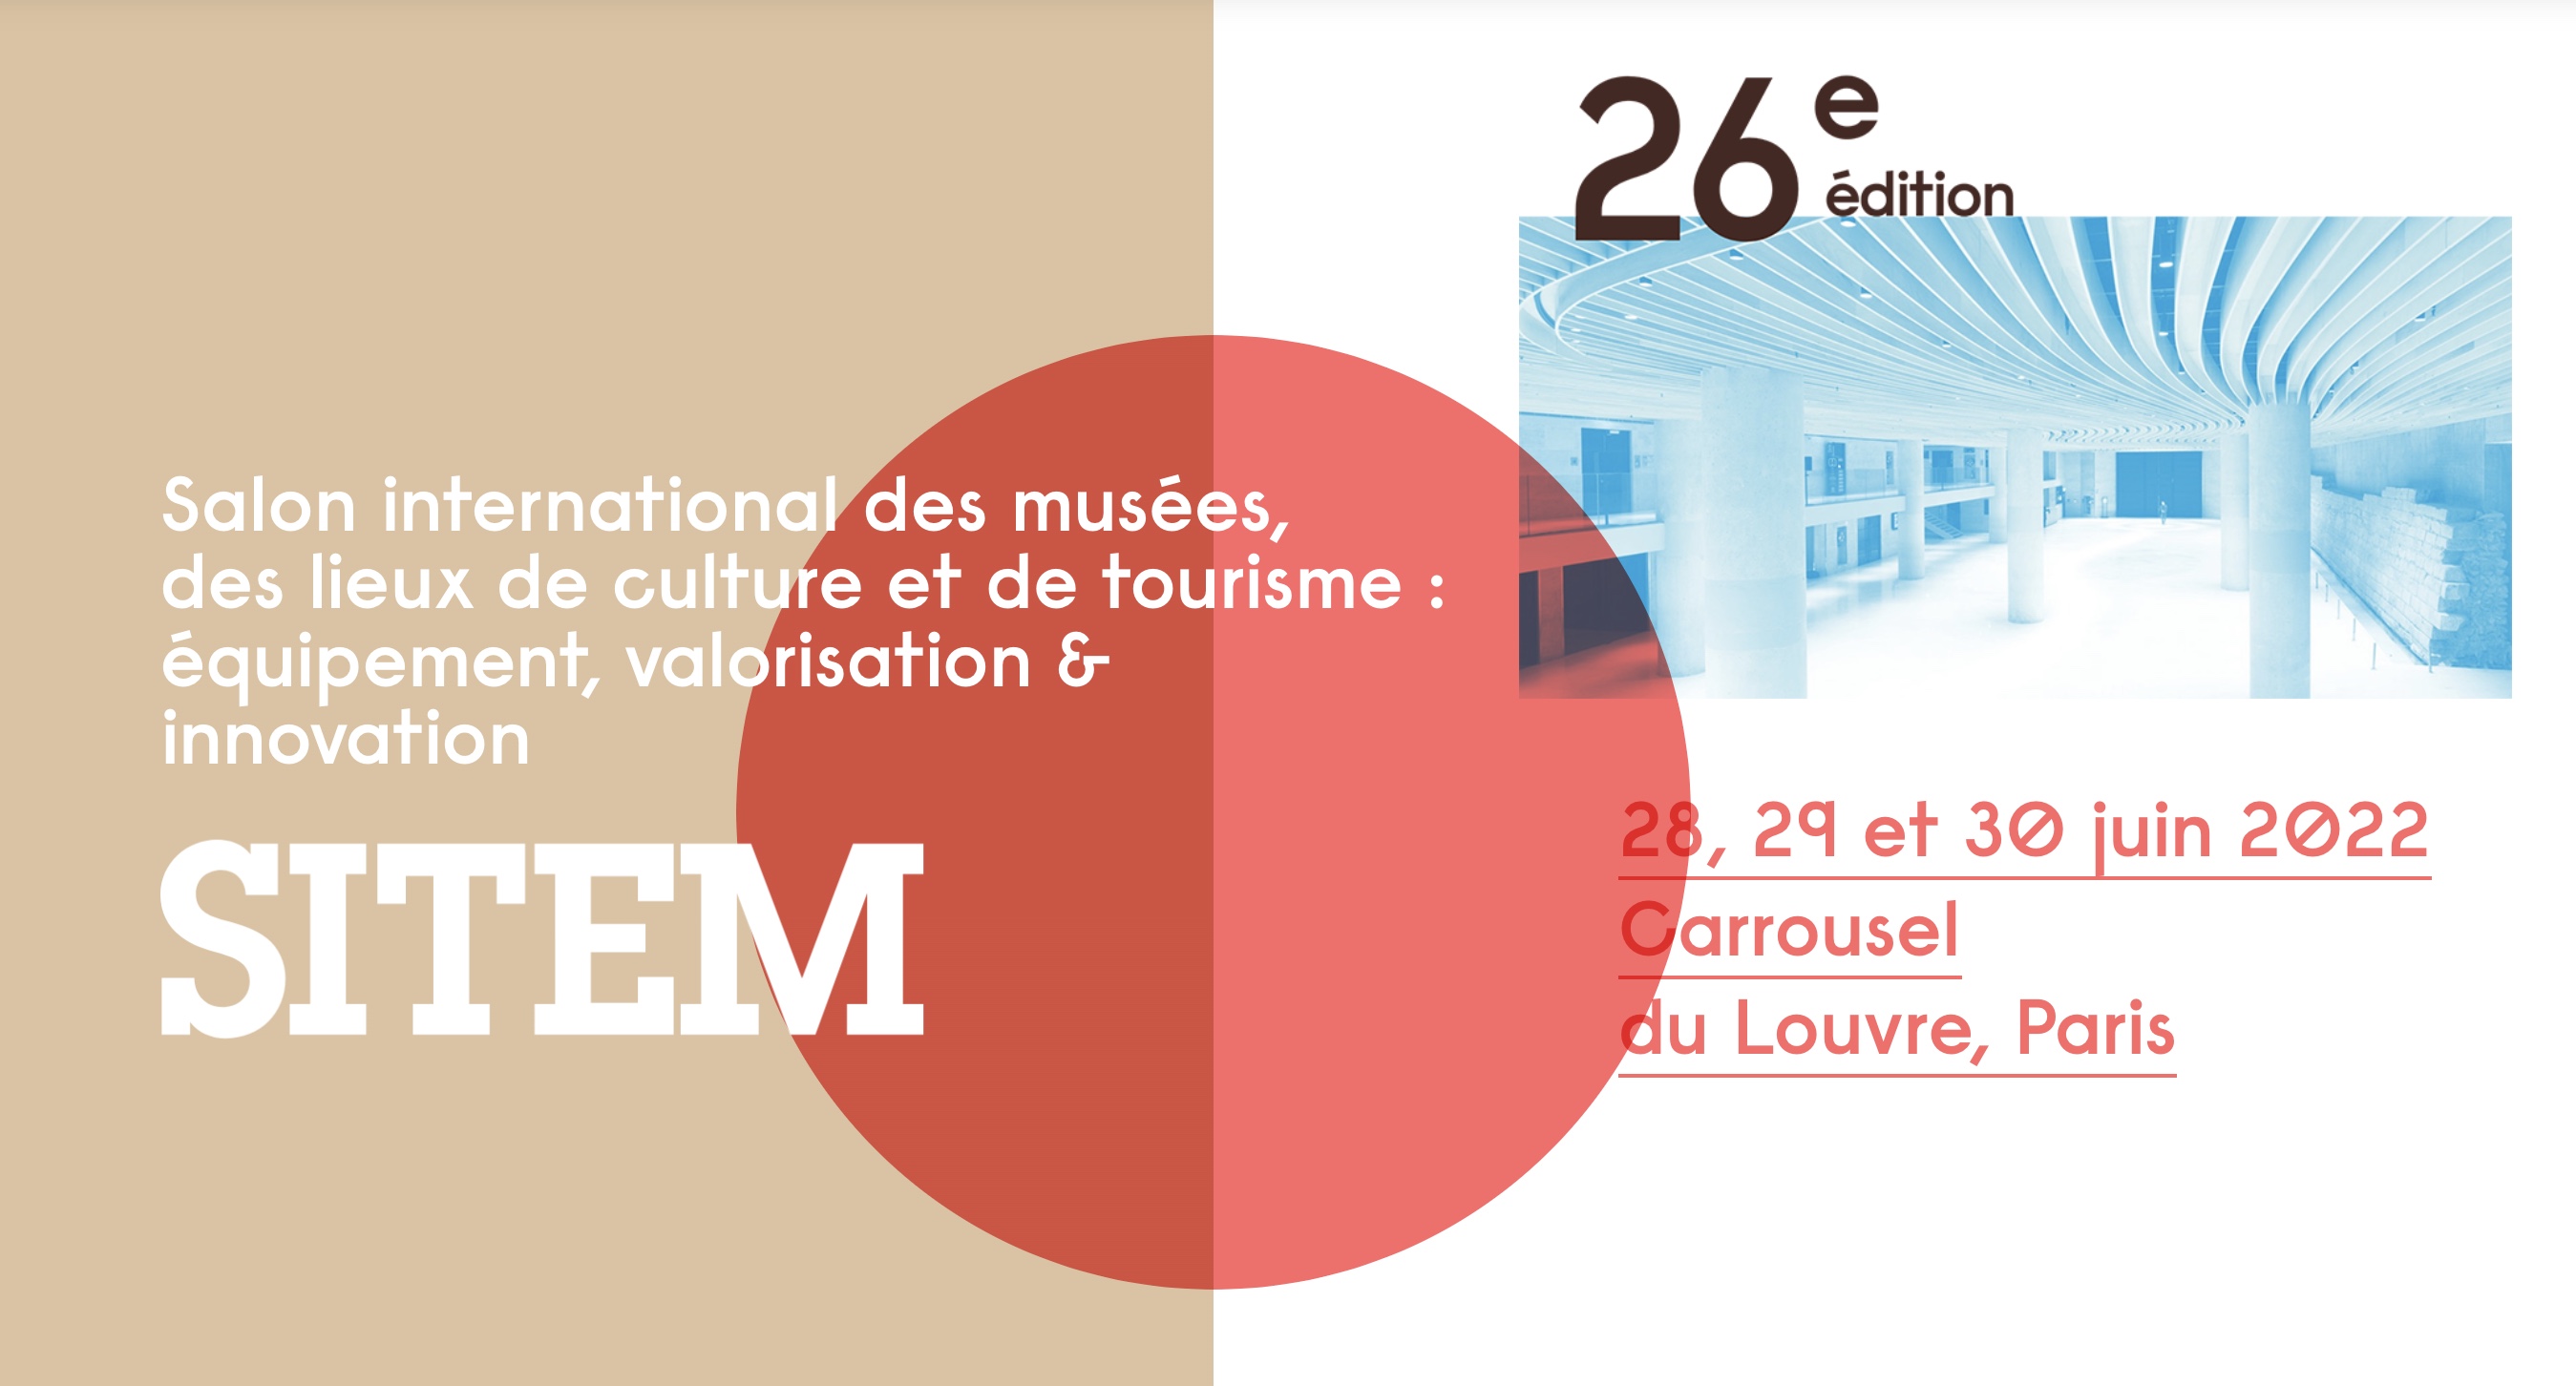 Retrouvez-nous au SITEM 2022 : 28, 29 et 30 juin au Carrousel du Louvre